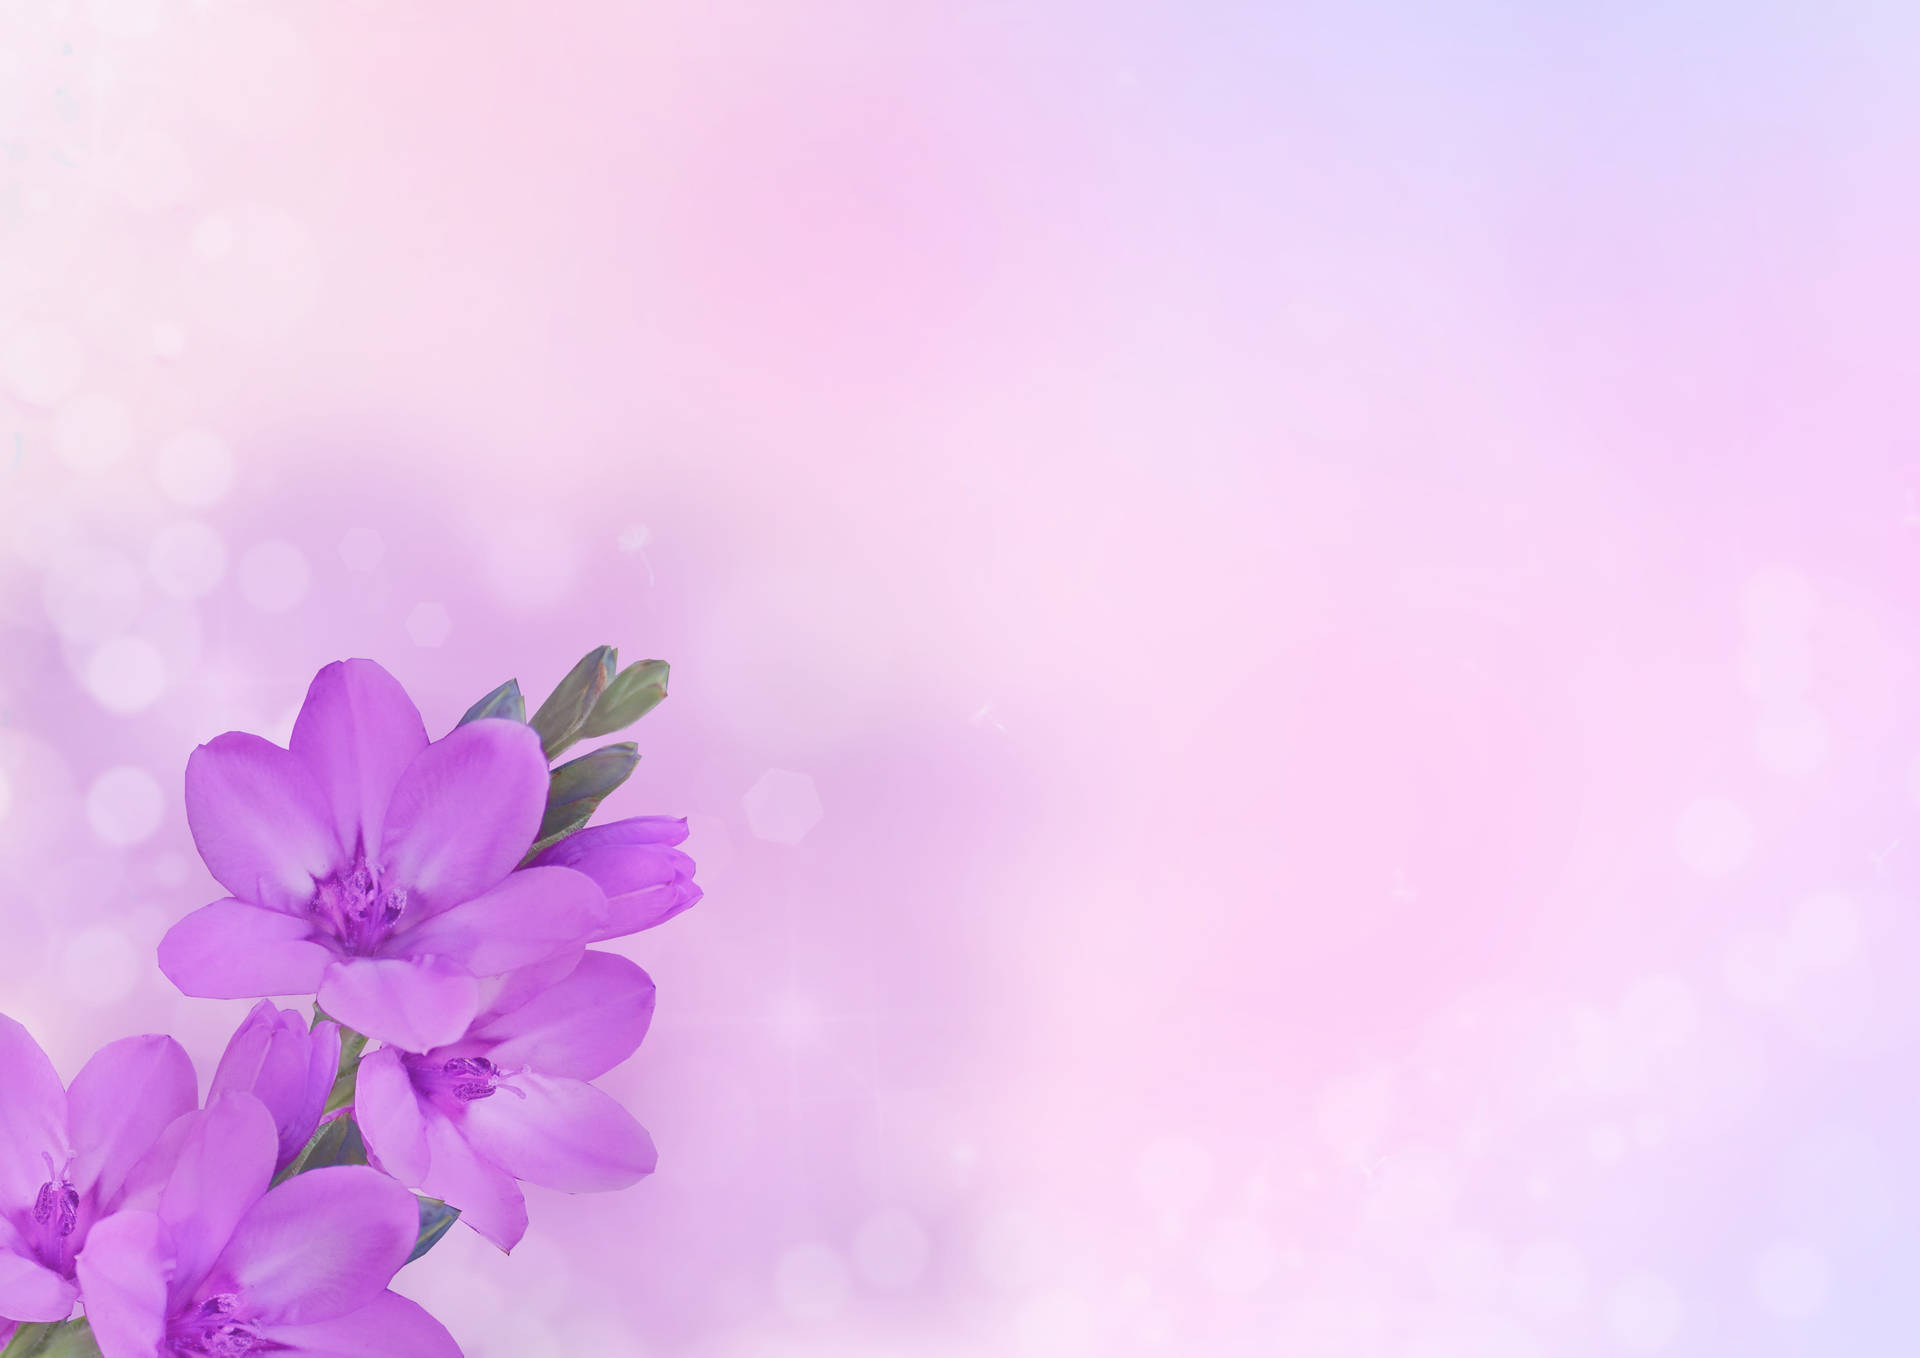 Computadoracon Temática De Flores Violetas Y Estética Pastel. Fondo de pantalla